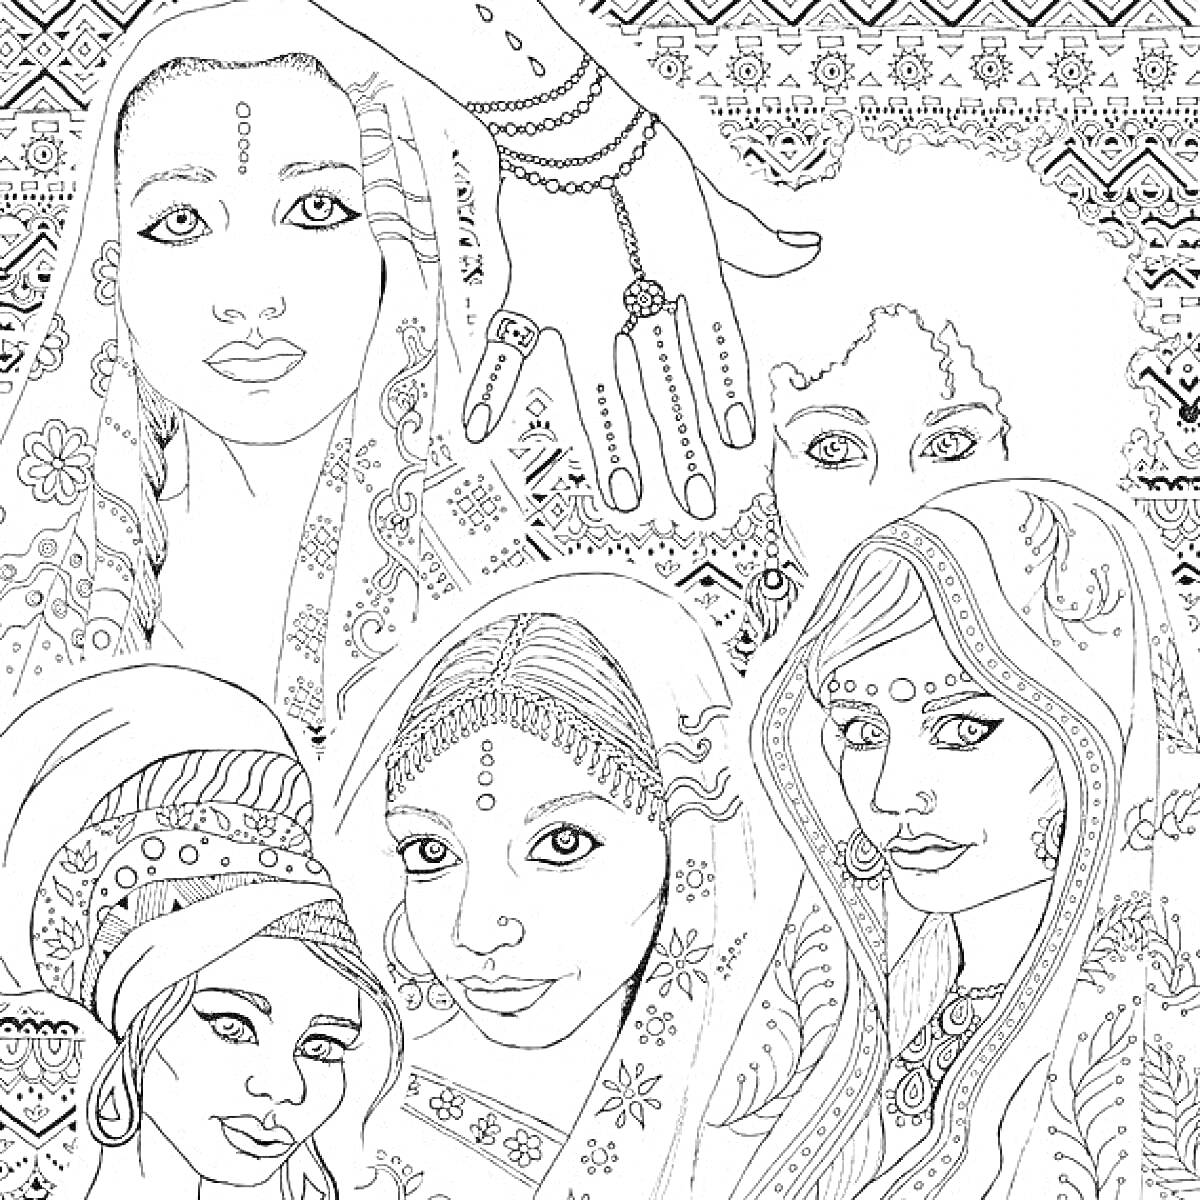 Раскраска Антистресс раскраска с женщинами в традиционных нарядах, руки с узорами и сложным фоновым рисунком